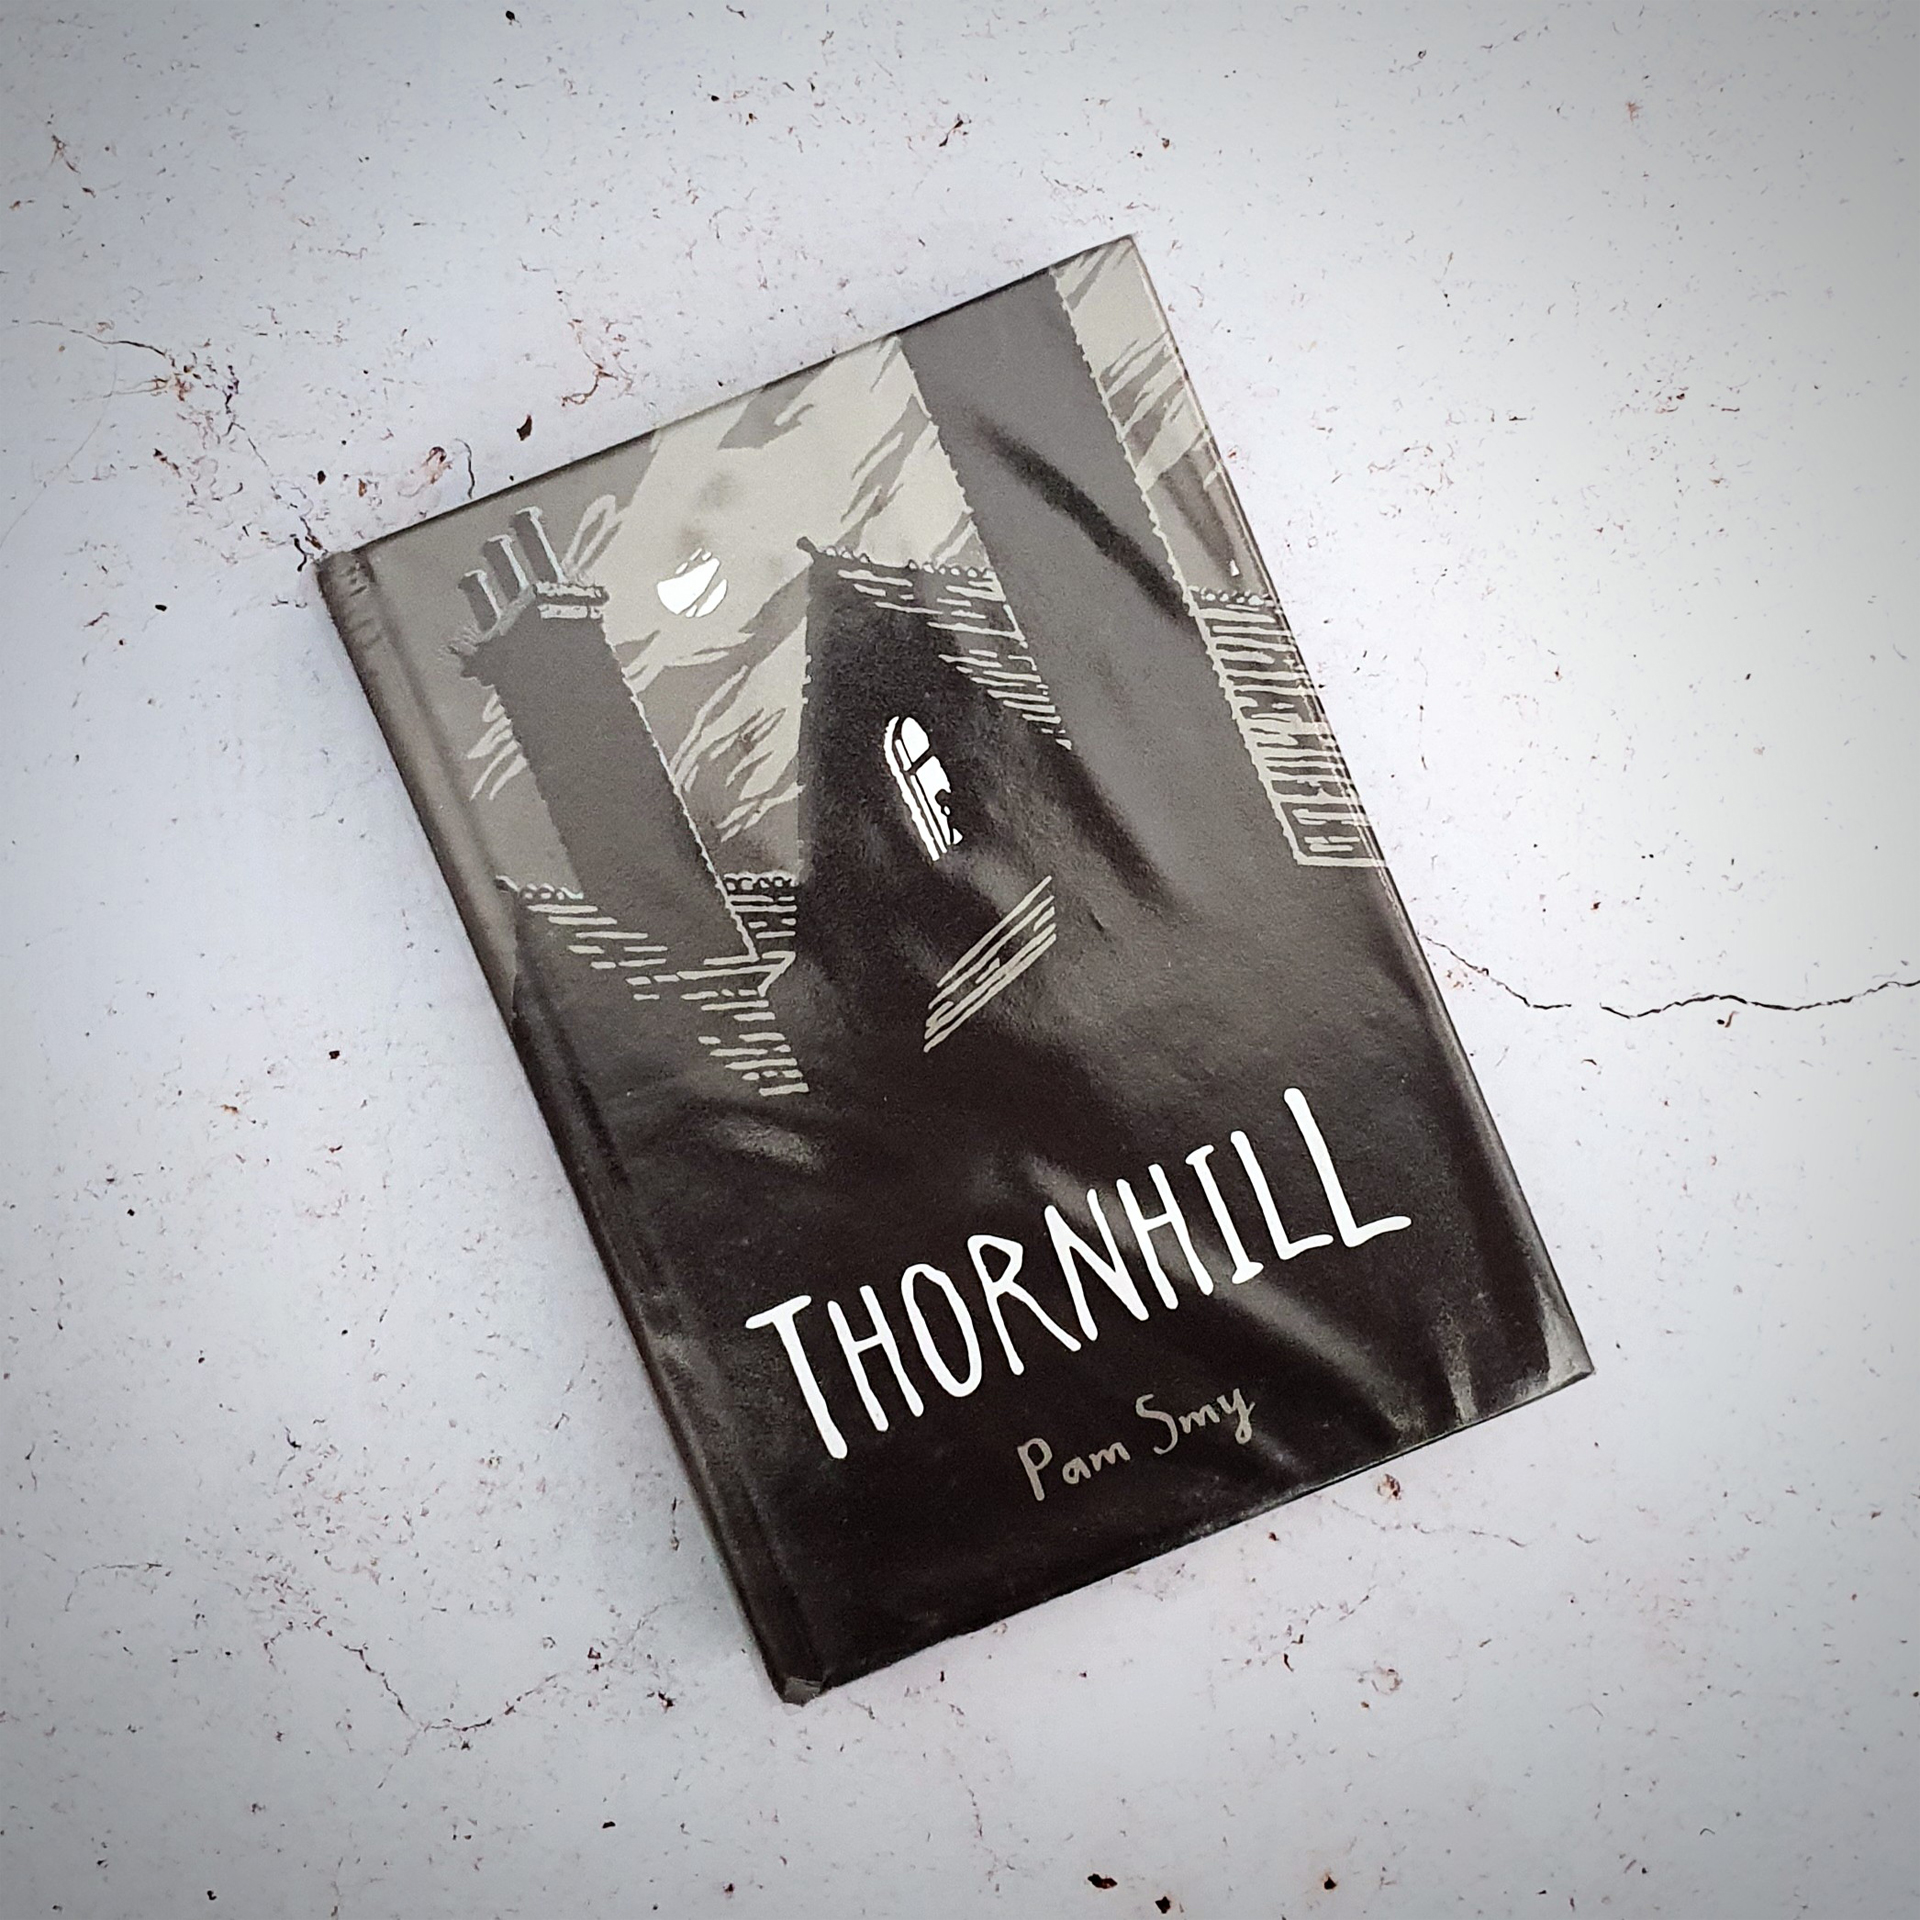 Thornhill - Pam Smy